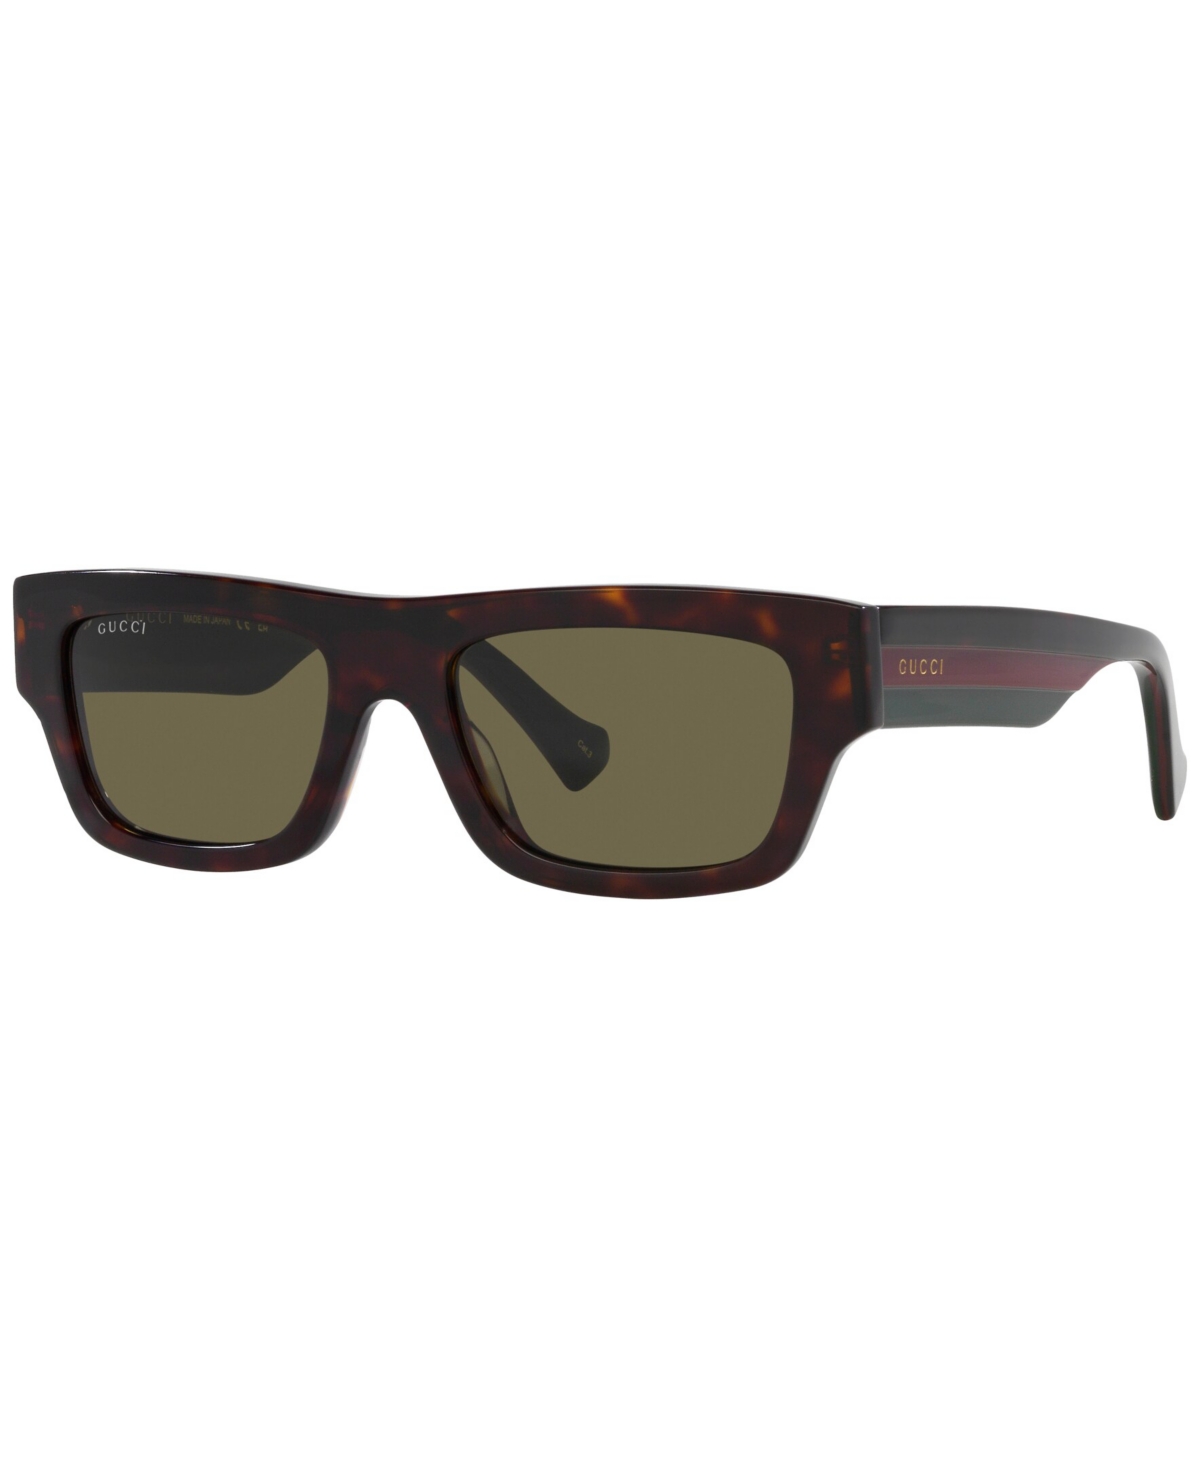 Gucci Men's Sunglasses, Gg1301s In Tortoise